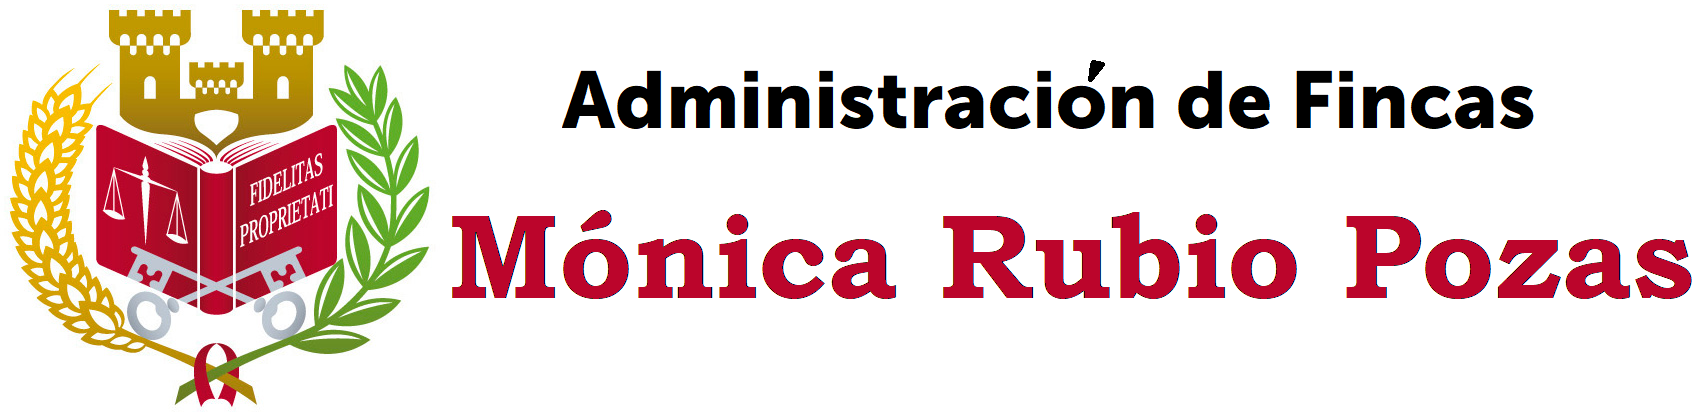 Administración de Fincas Mónica Rubio logo